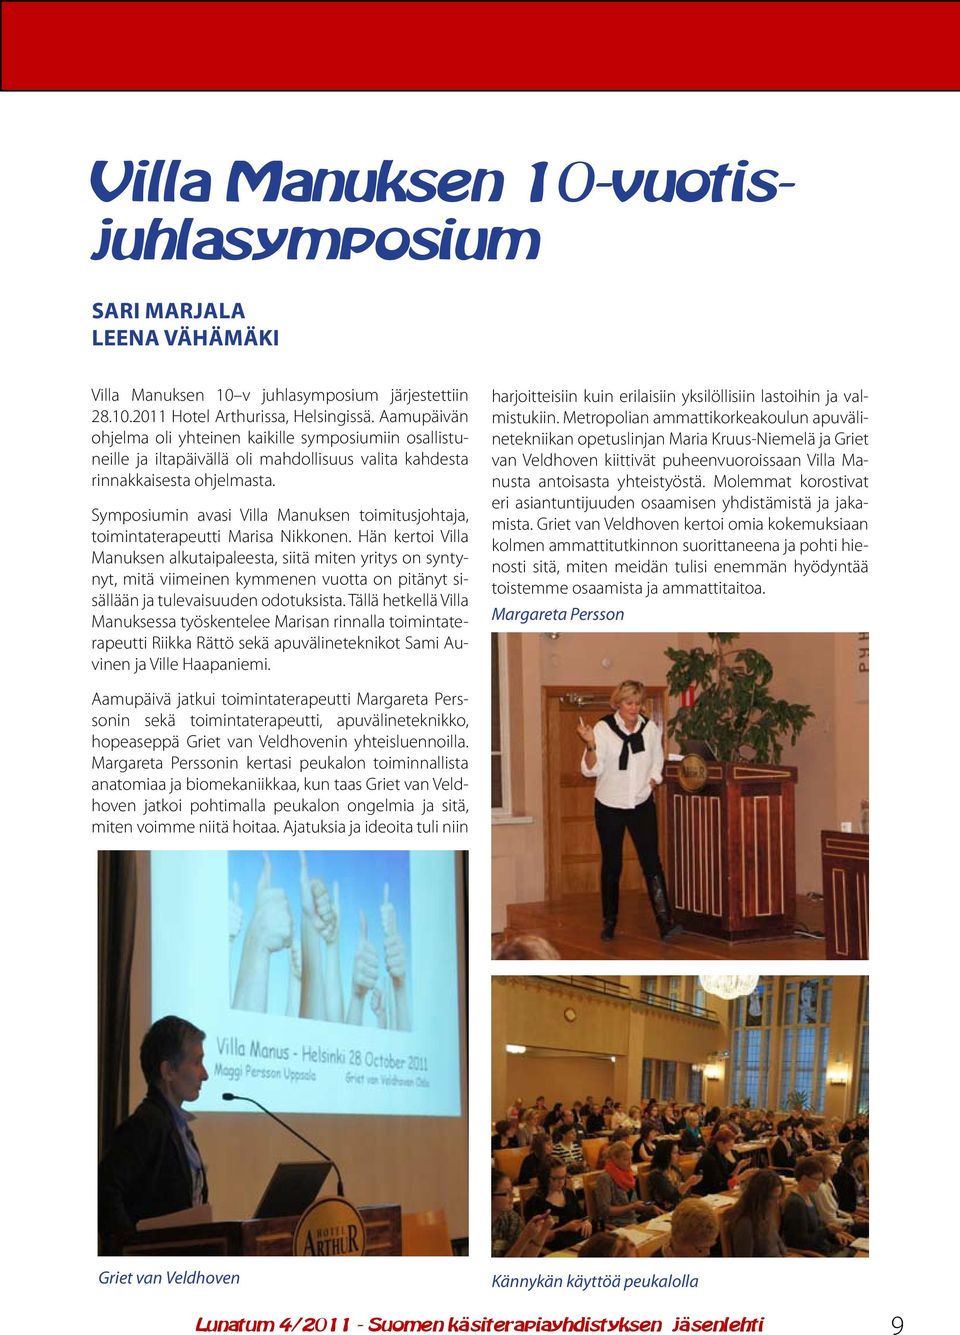 Symposiumin avasi Villa Manuksen toimitusjohtaja, toimintaterapeutti Marisa Nikkonen.